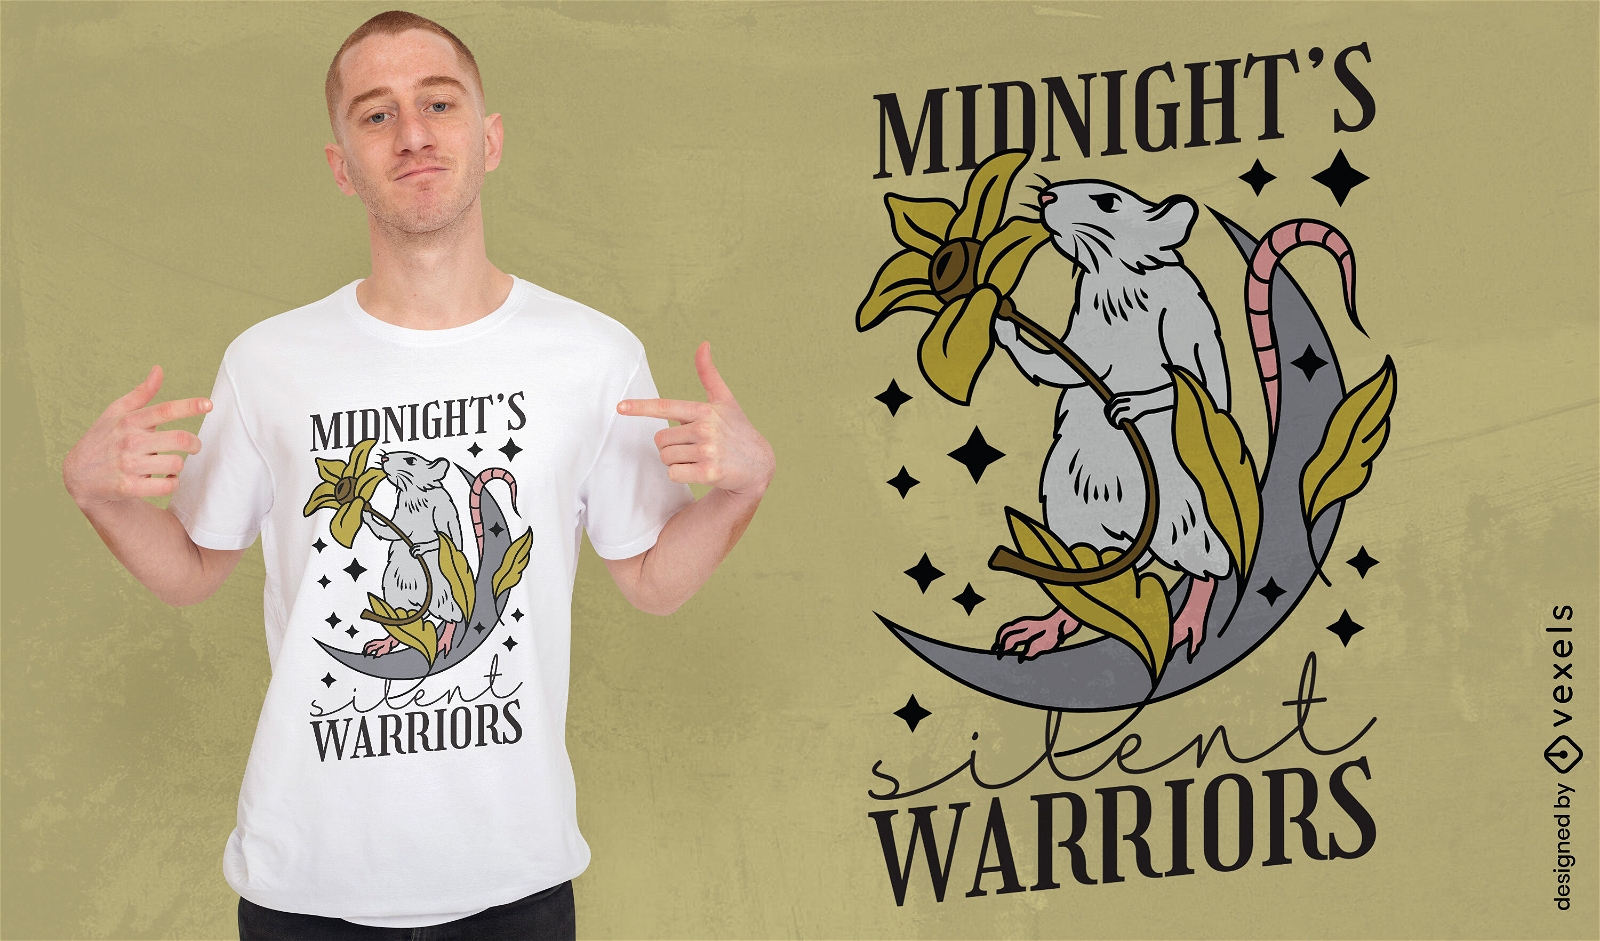 Dise?o de camiseta de guerreros felinos de medianoche.